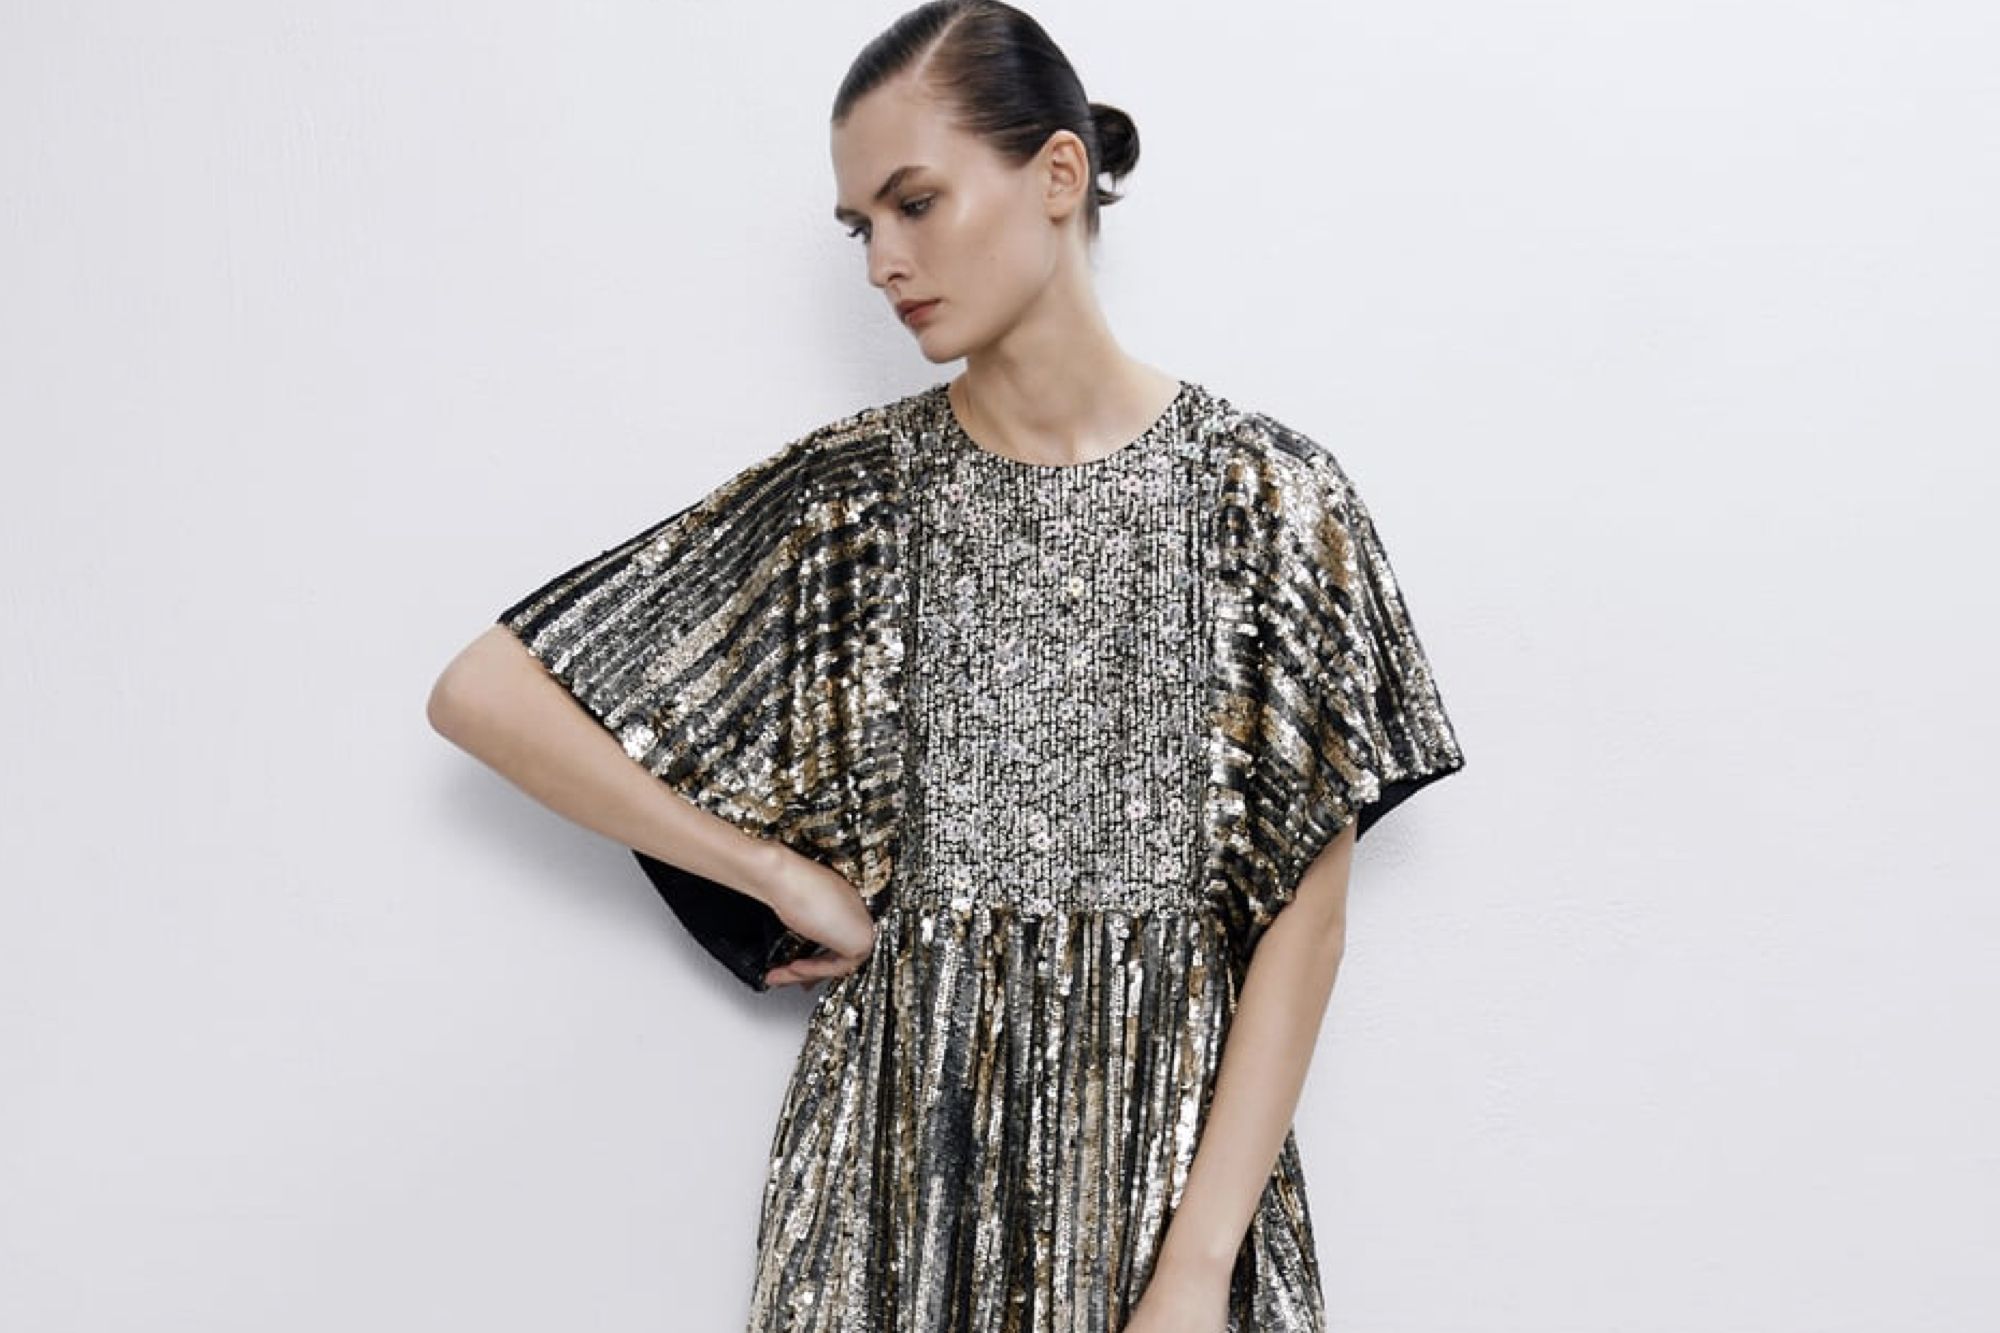 Zara lanza dos vestidos de edición lentejuelas